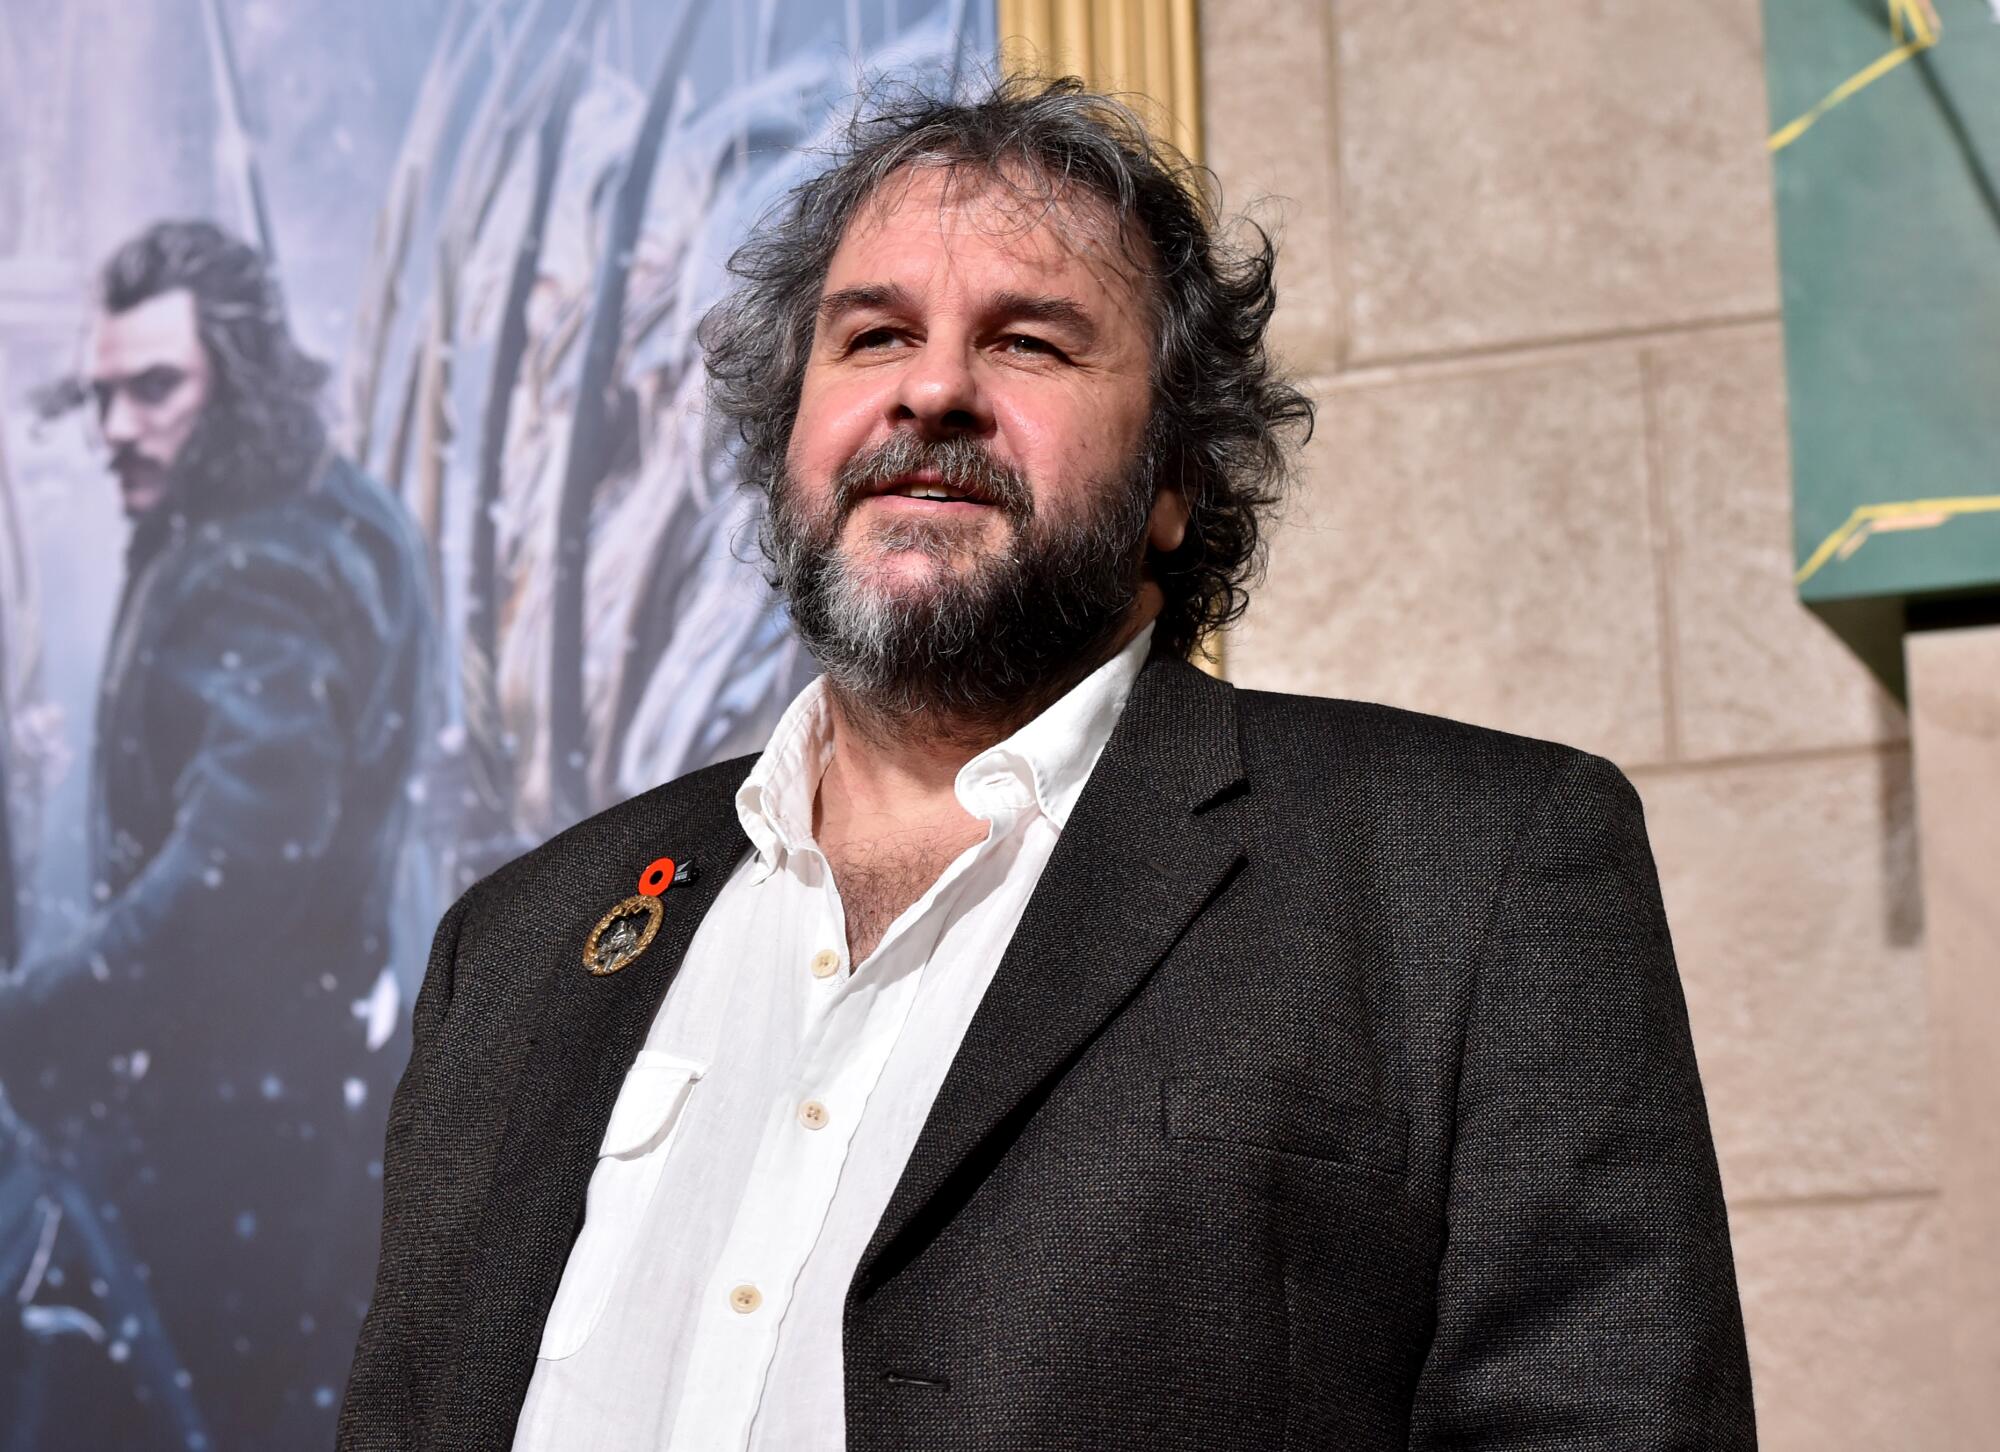 El escritor, director y productor Peter Jackson durante la premiere de "The Hobbit: The Battle of the Five Armies".